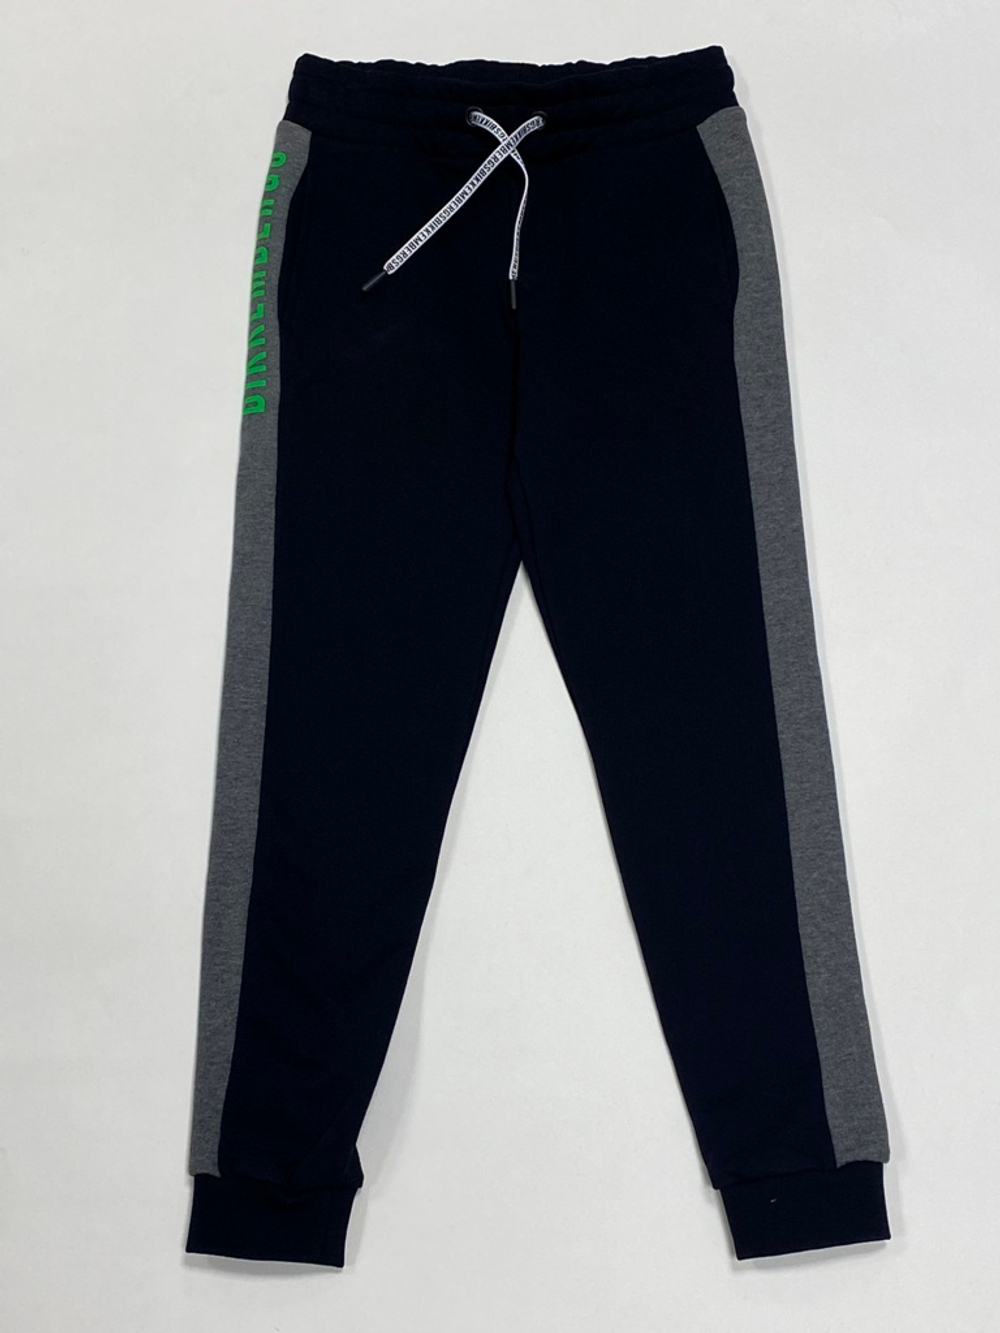 Свитшот + брюки трикотажные BIKKEMBERGS Серый/Черный/Зеленый термопринт (Мальчик)